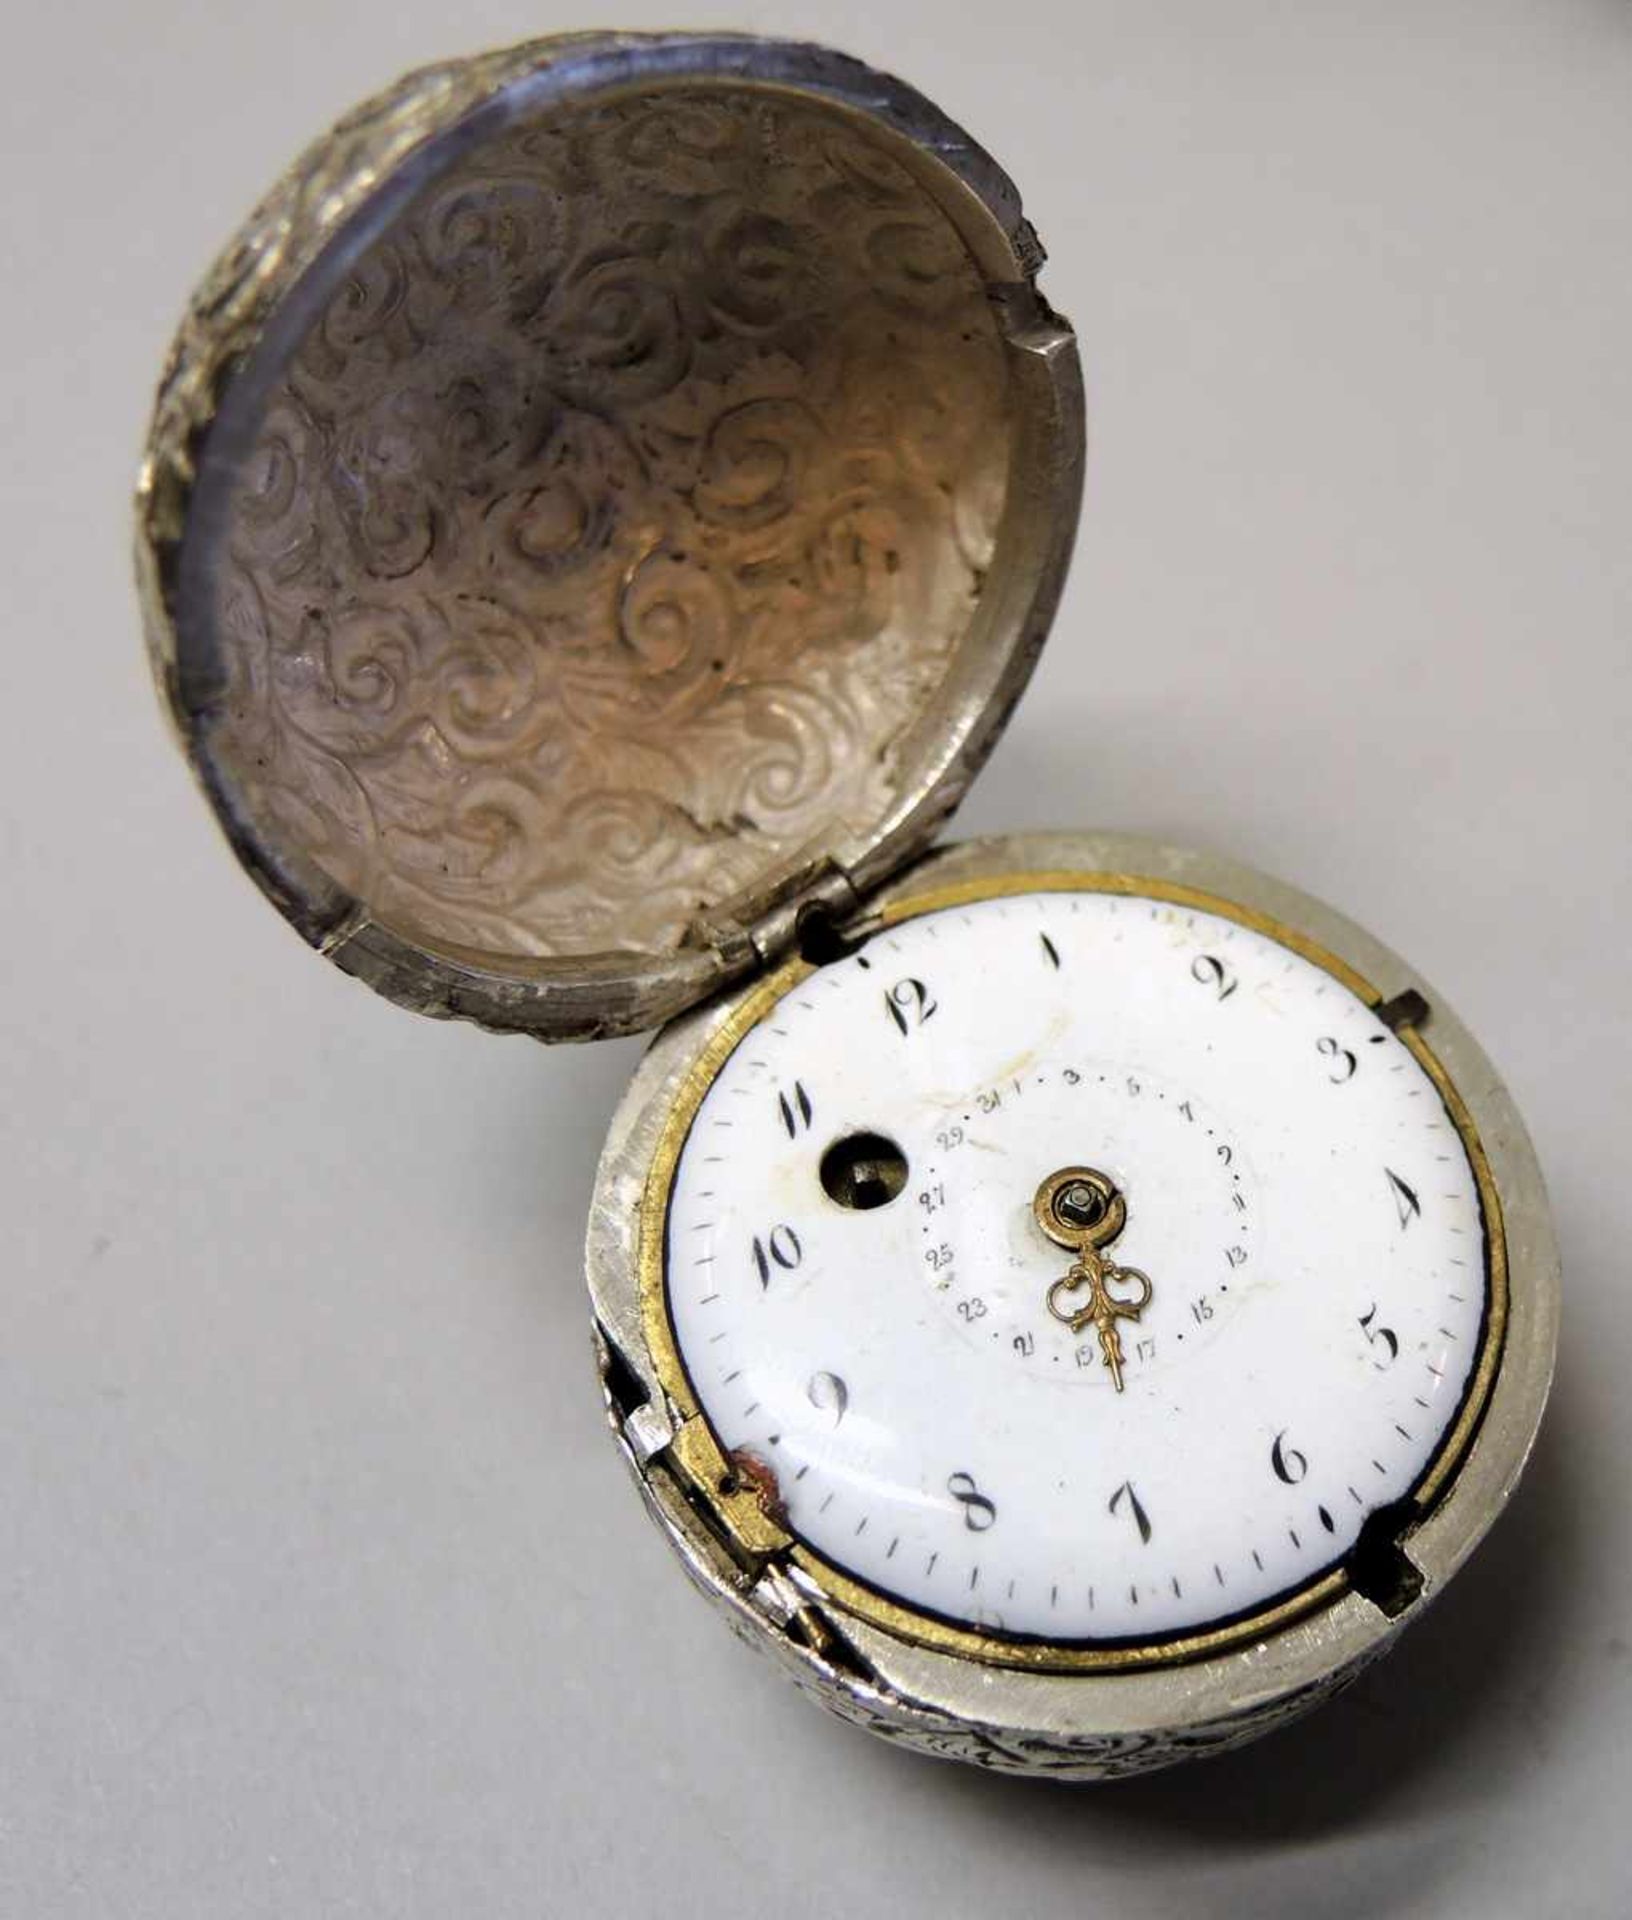 Seltene Stockknaufuhr Silber. Müsste überarbeitet werden, Drücker für Silberkugel fehlt. Um 1770